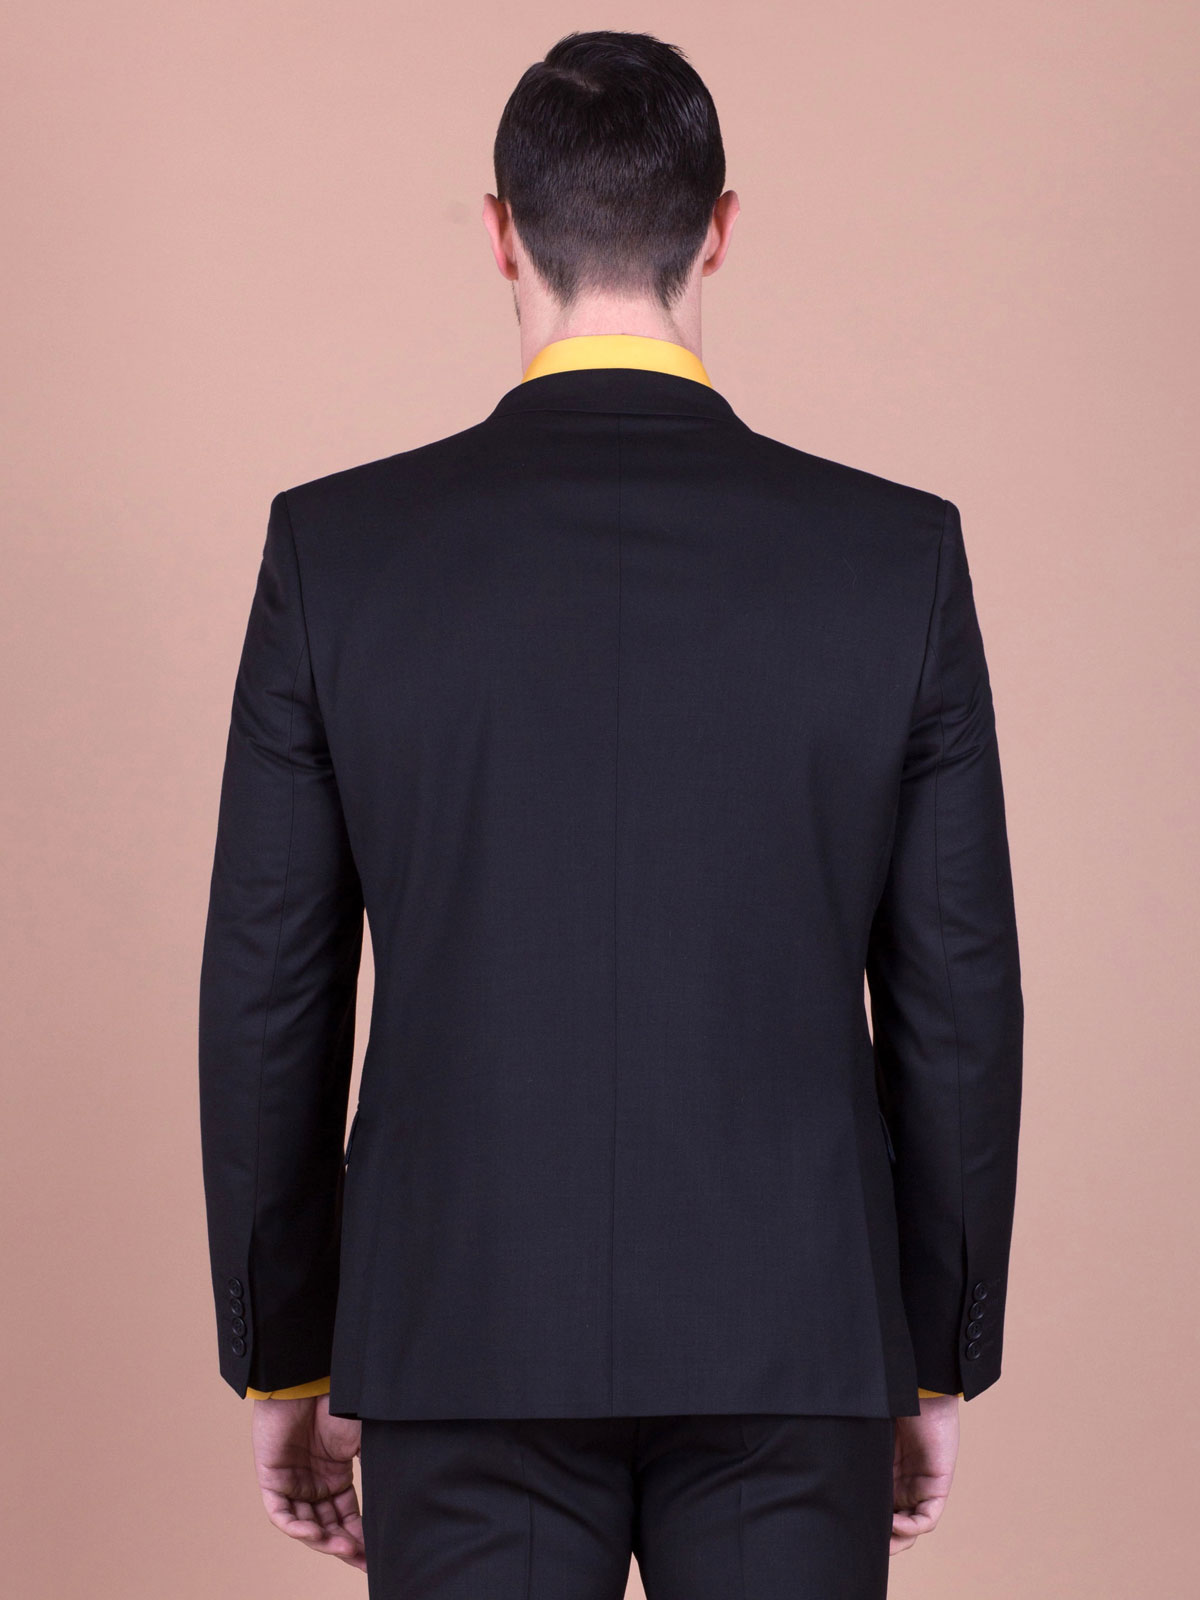 Jachetă clasică neagră - 64070 € 61.30 img4